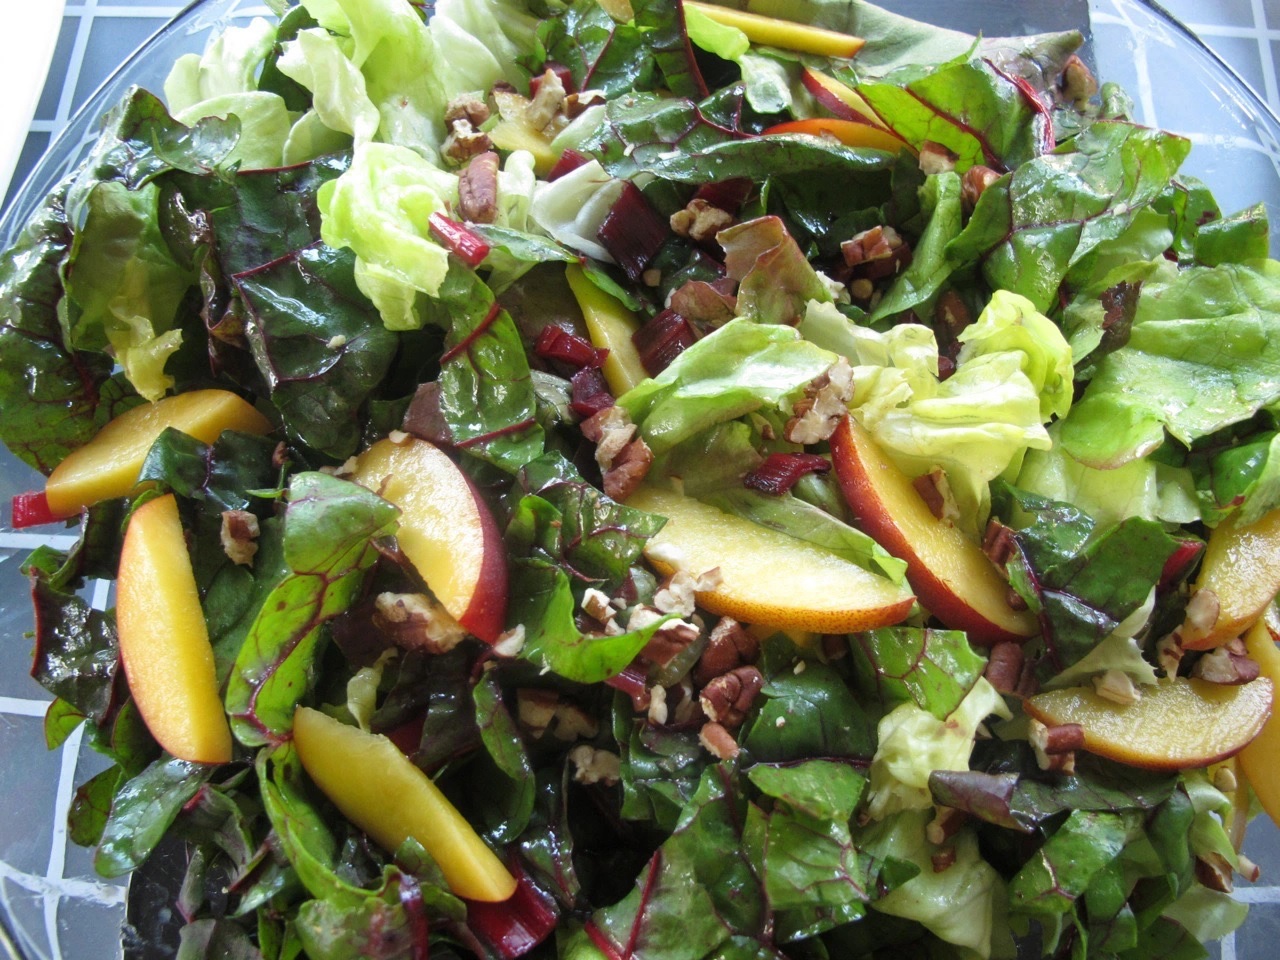 Salad cải cầu vồng phù hợp với người đang ở chế độ ăn kiêng